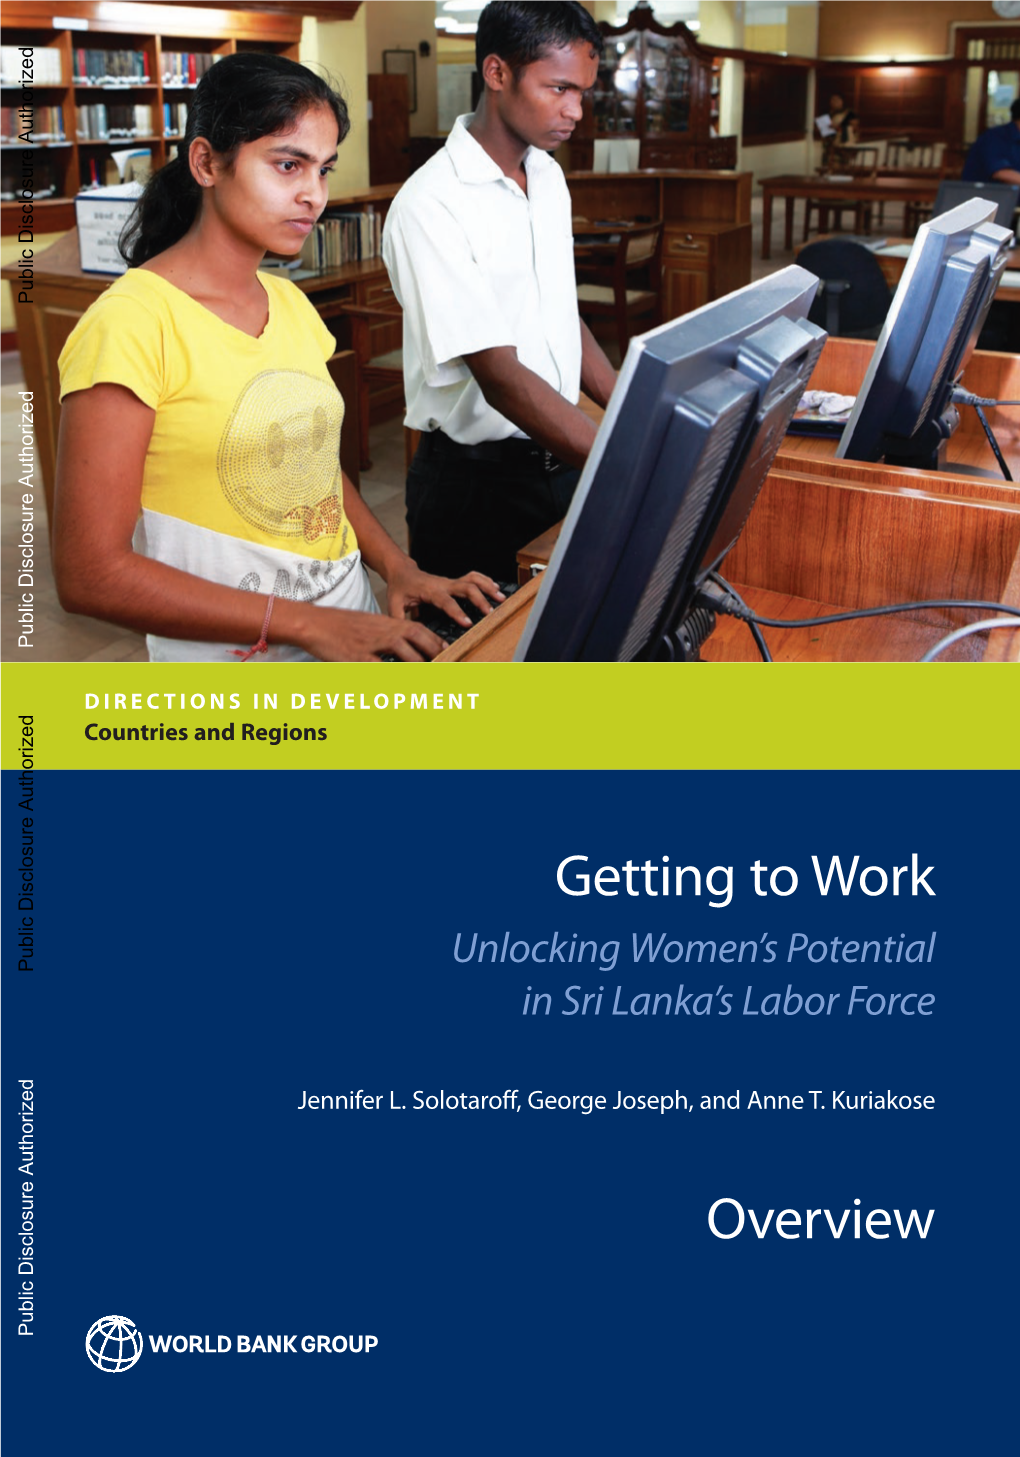 Potential in Sri Lanka's Labor Force